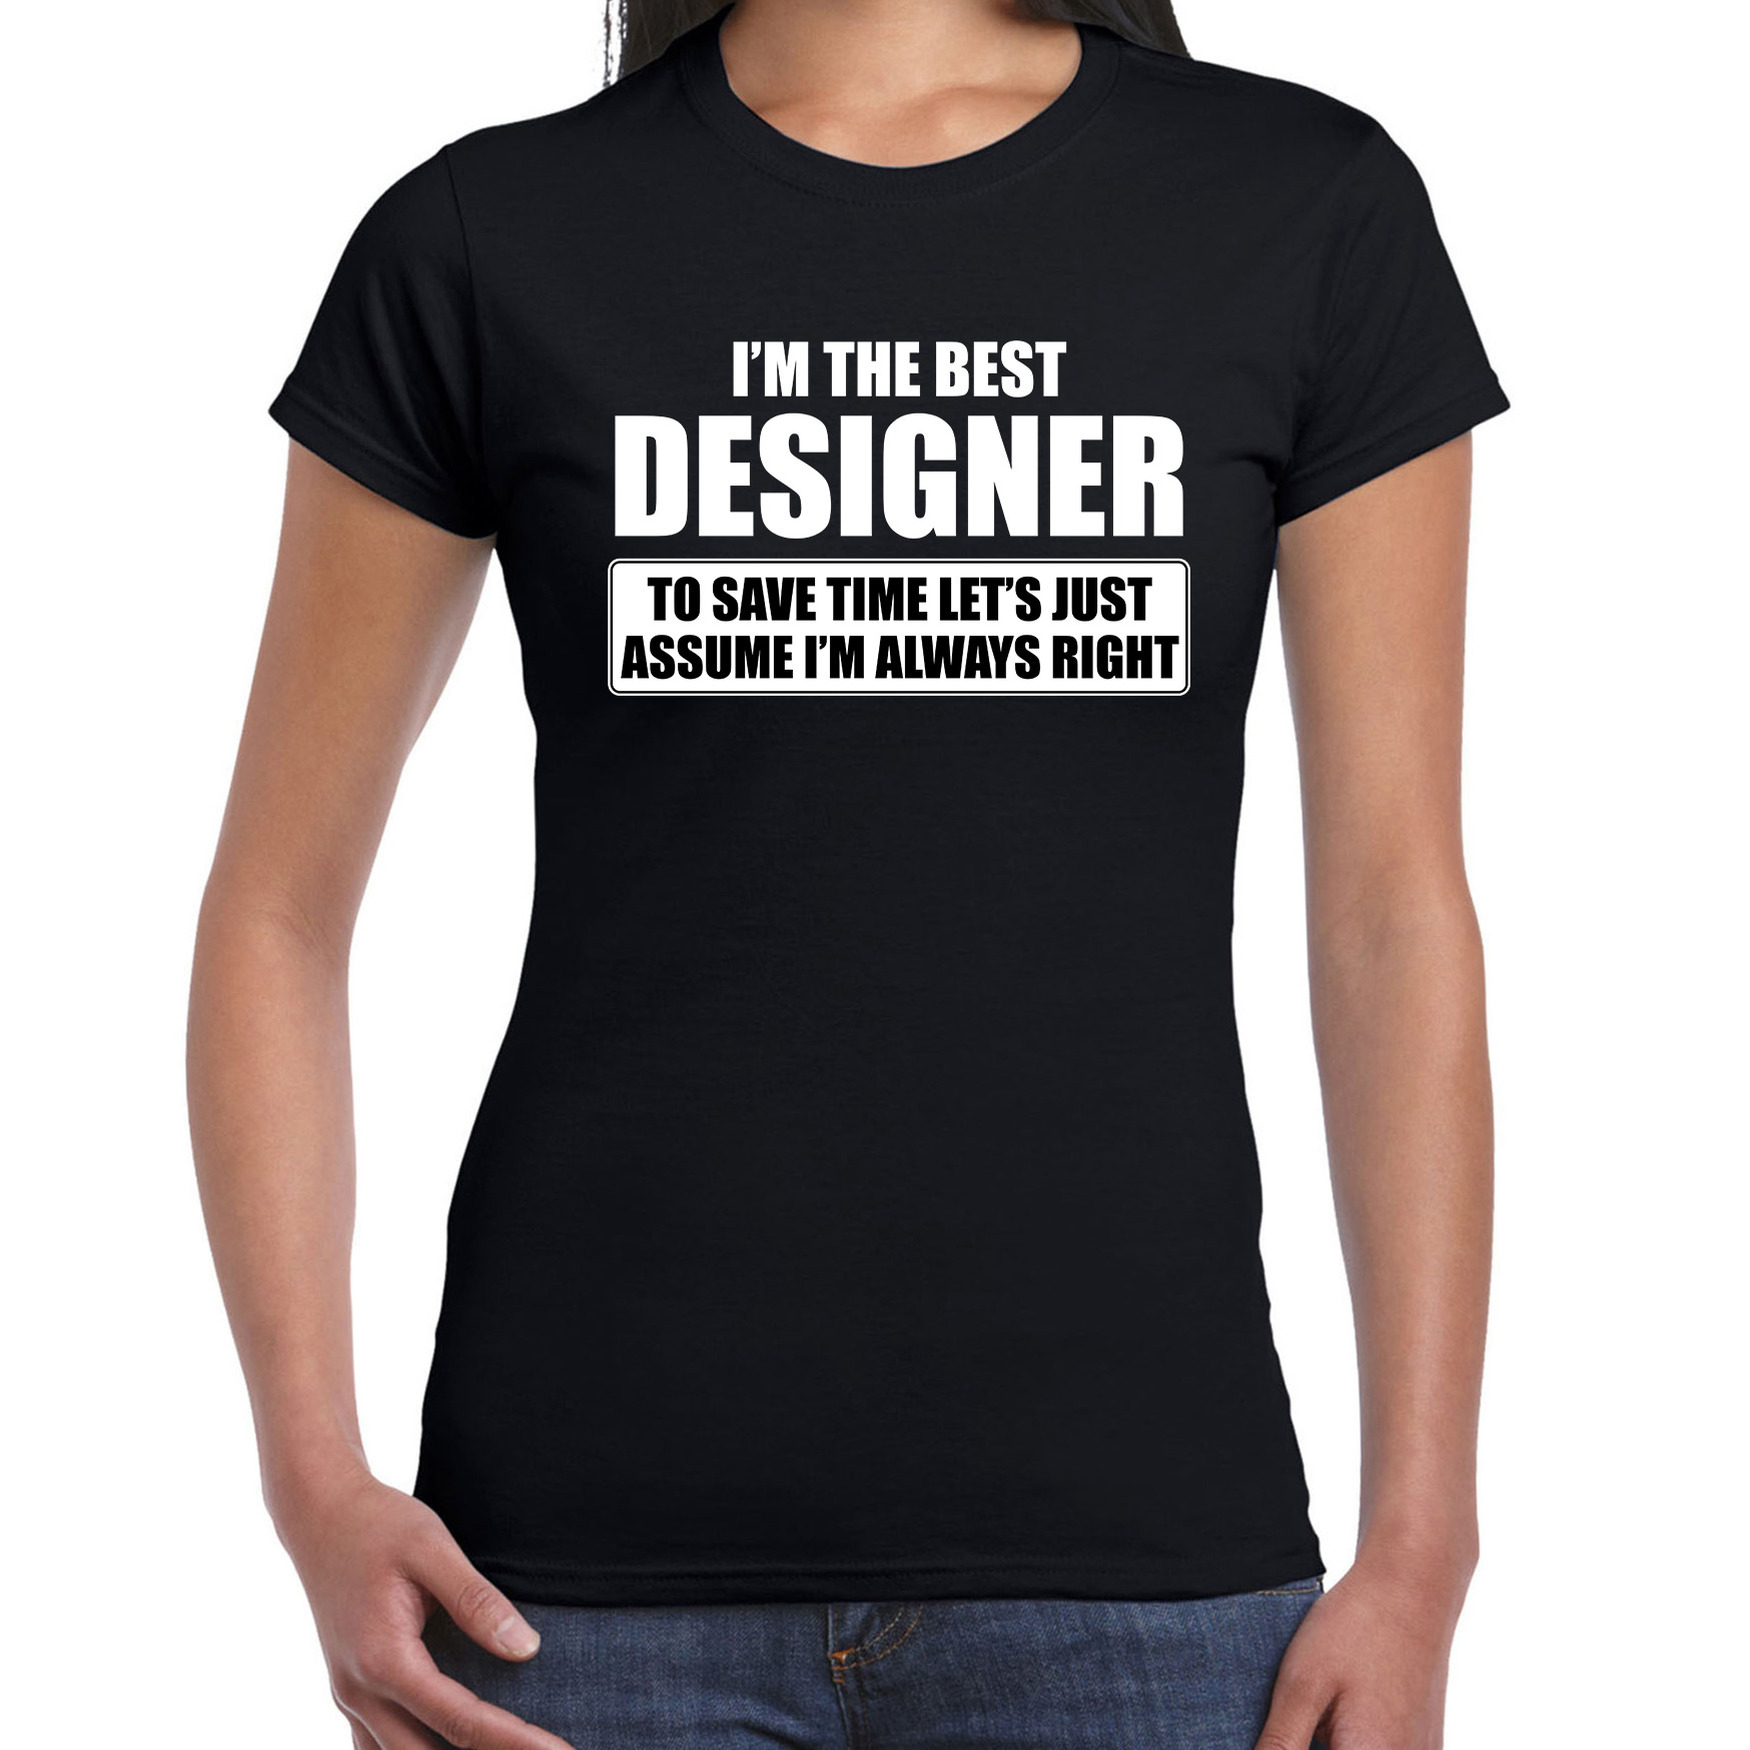 I'm the best designer t-shirt zwart dames De beste ontwerper cadeau